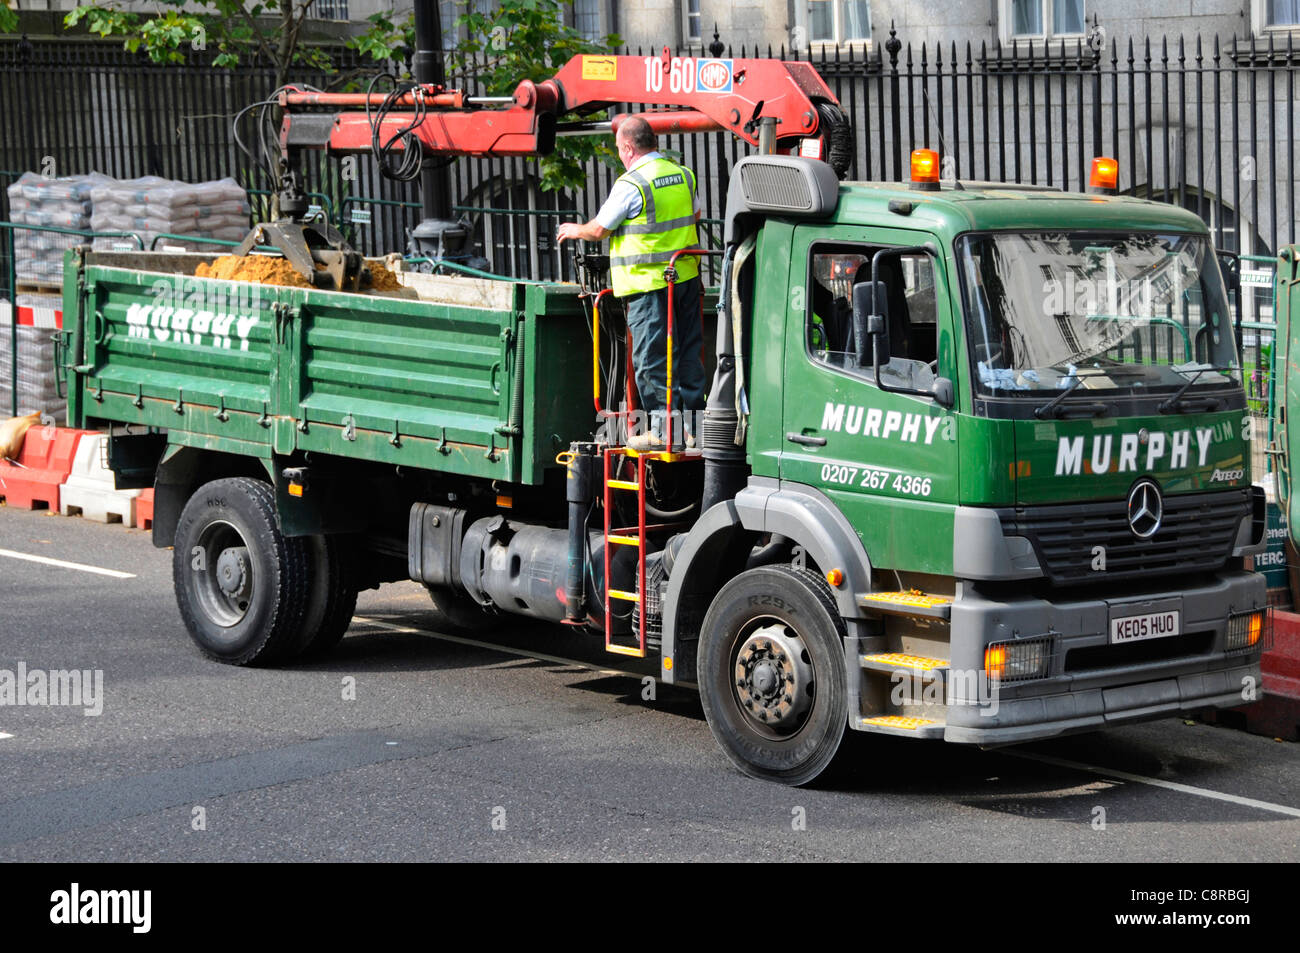 Conducteur de camion-benne commandes de fonctionnement de la grue de préhension chargeuse-benne à l'arrière de Murphy camion Mercedes bifonction à côté de travaux de route Londres Angleterre Royaume-Uni Banque D'Images